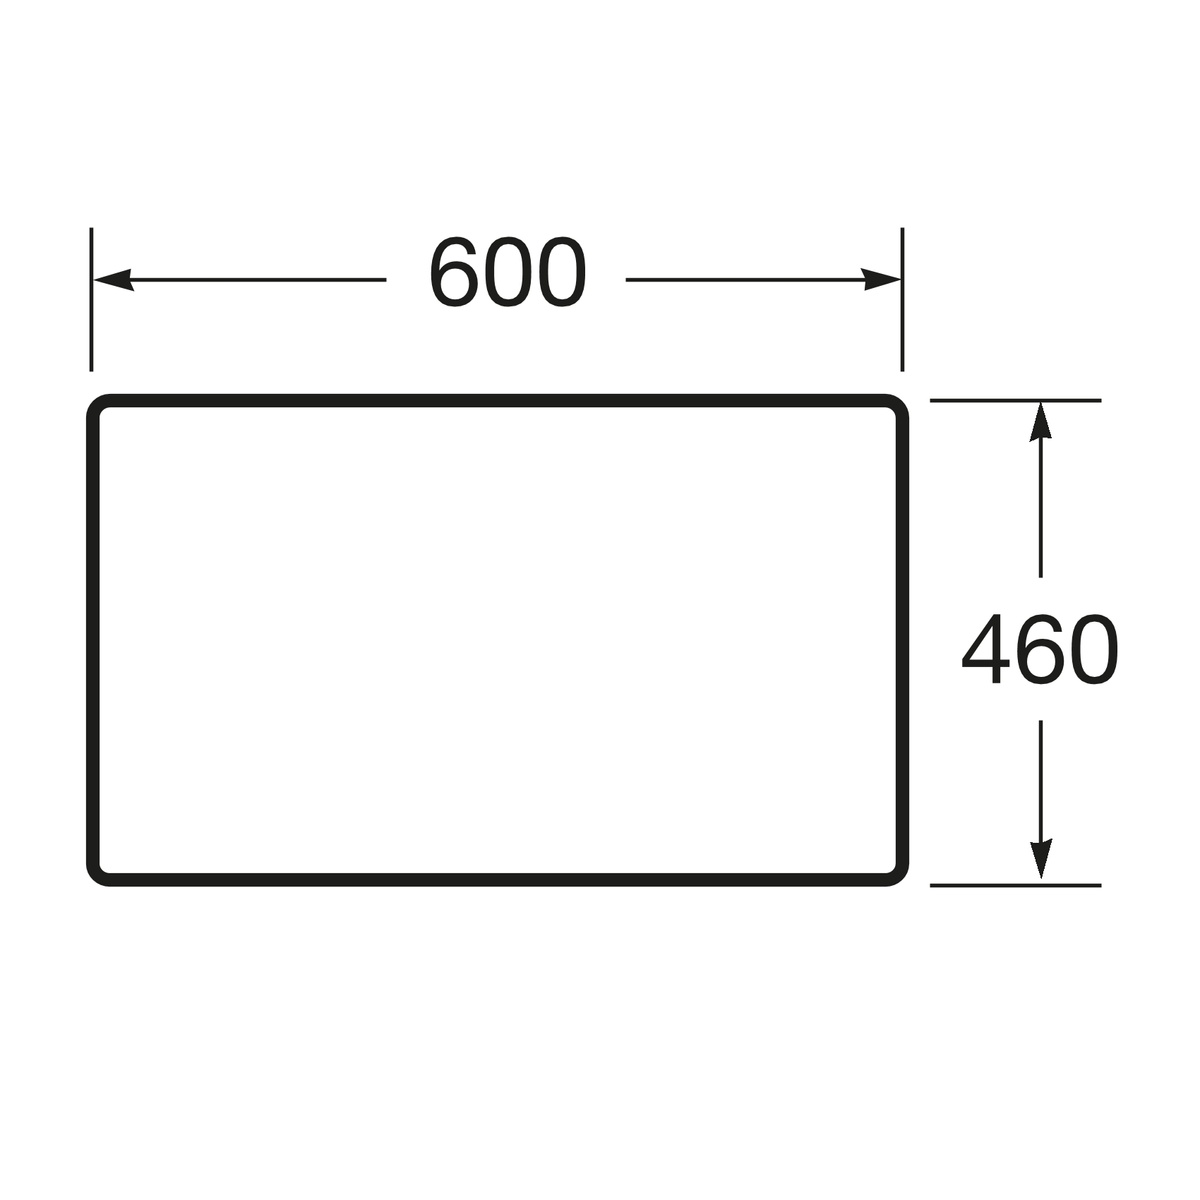 Столешница под умивальник в ванную ROCA VICTORIA BASIC ЛДСП 60x46см коричневый A857502155